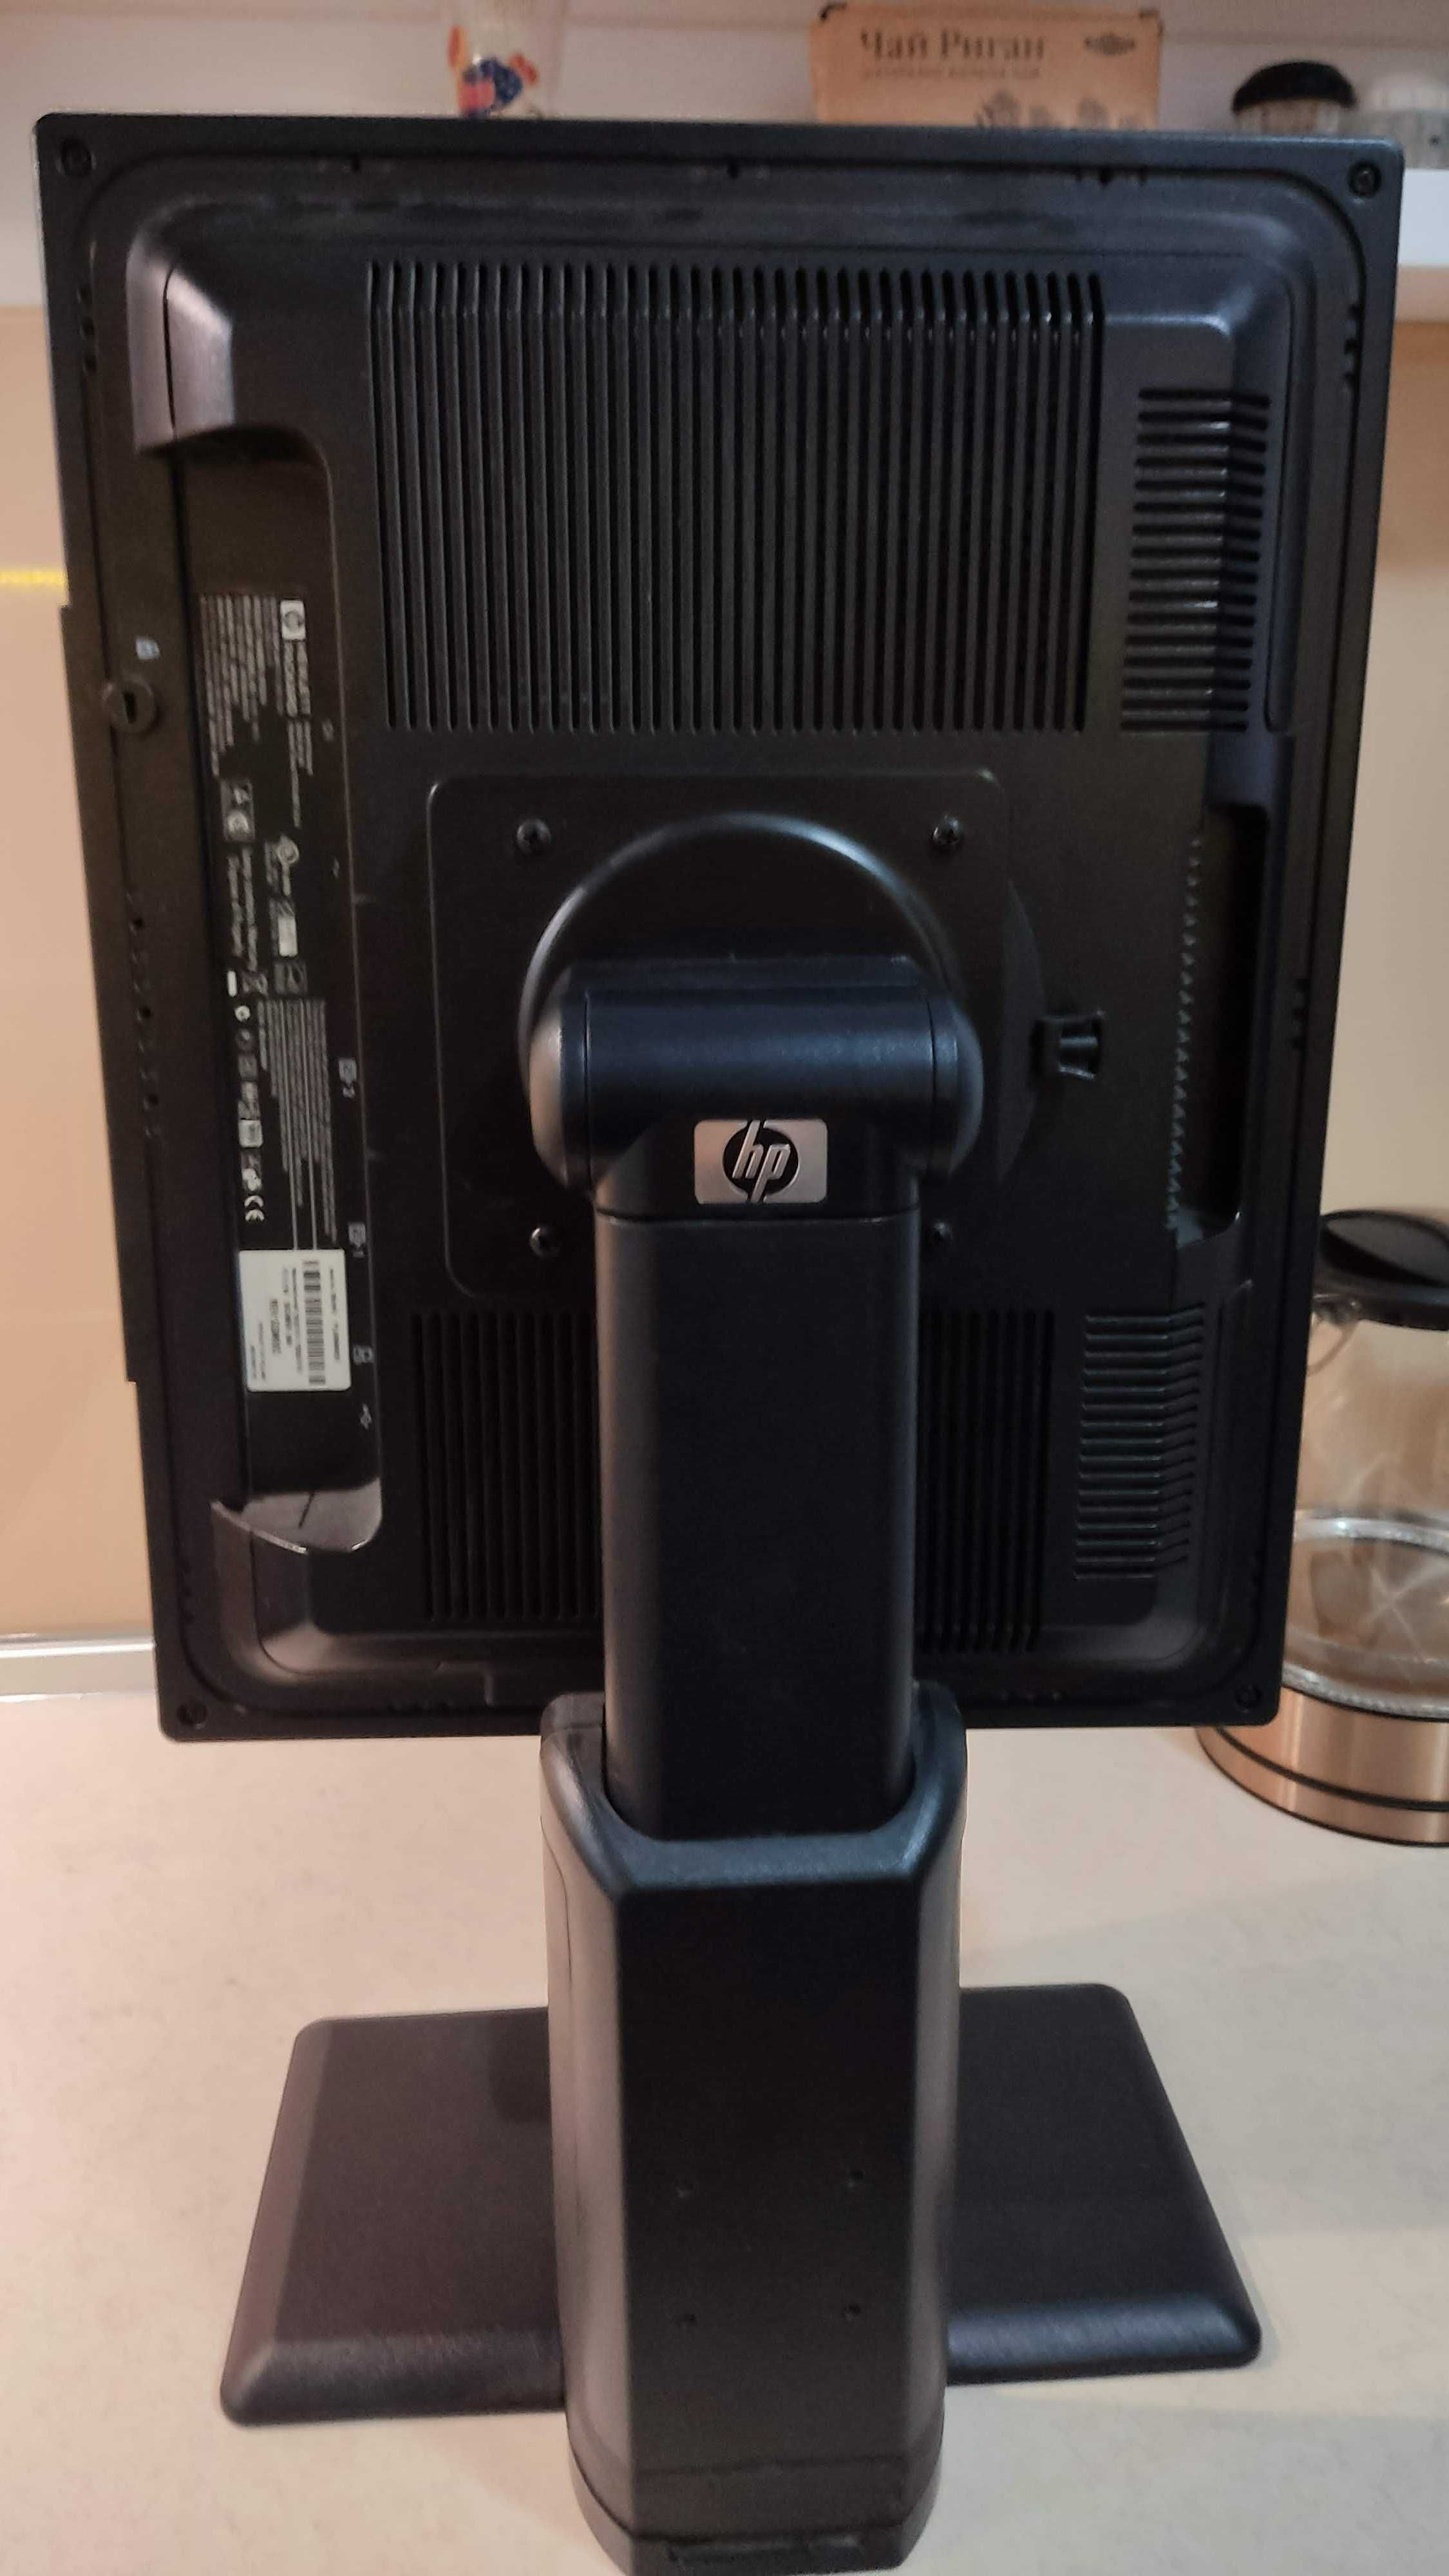 Монитор HP LP2065